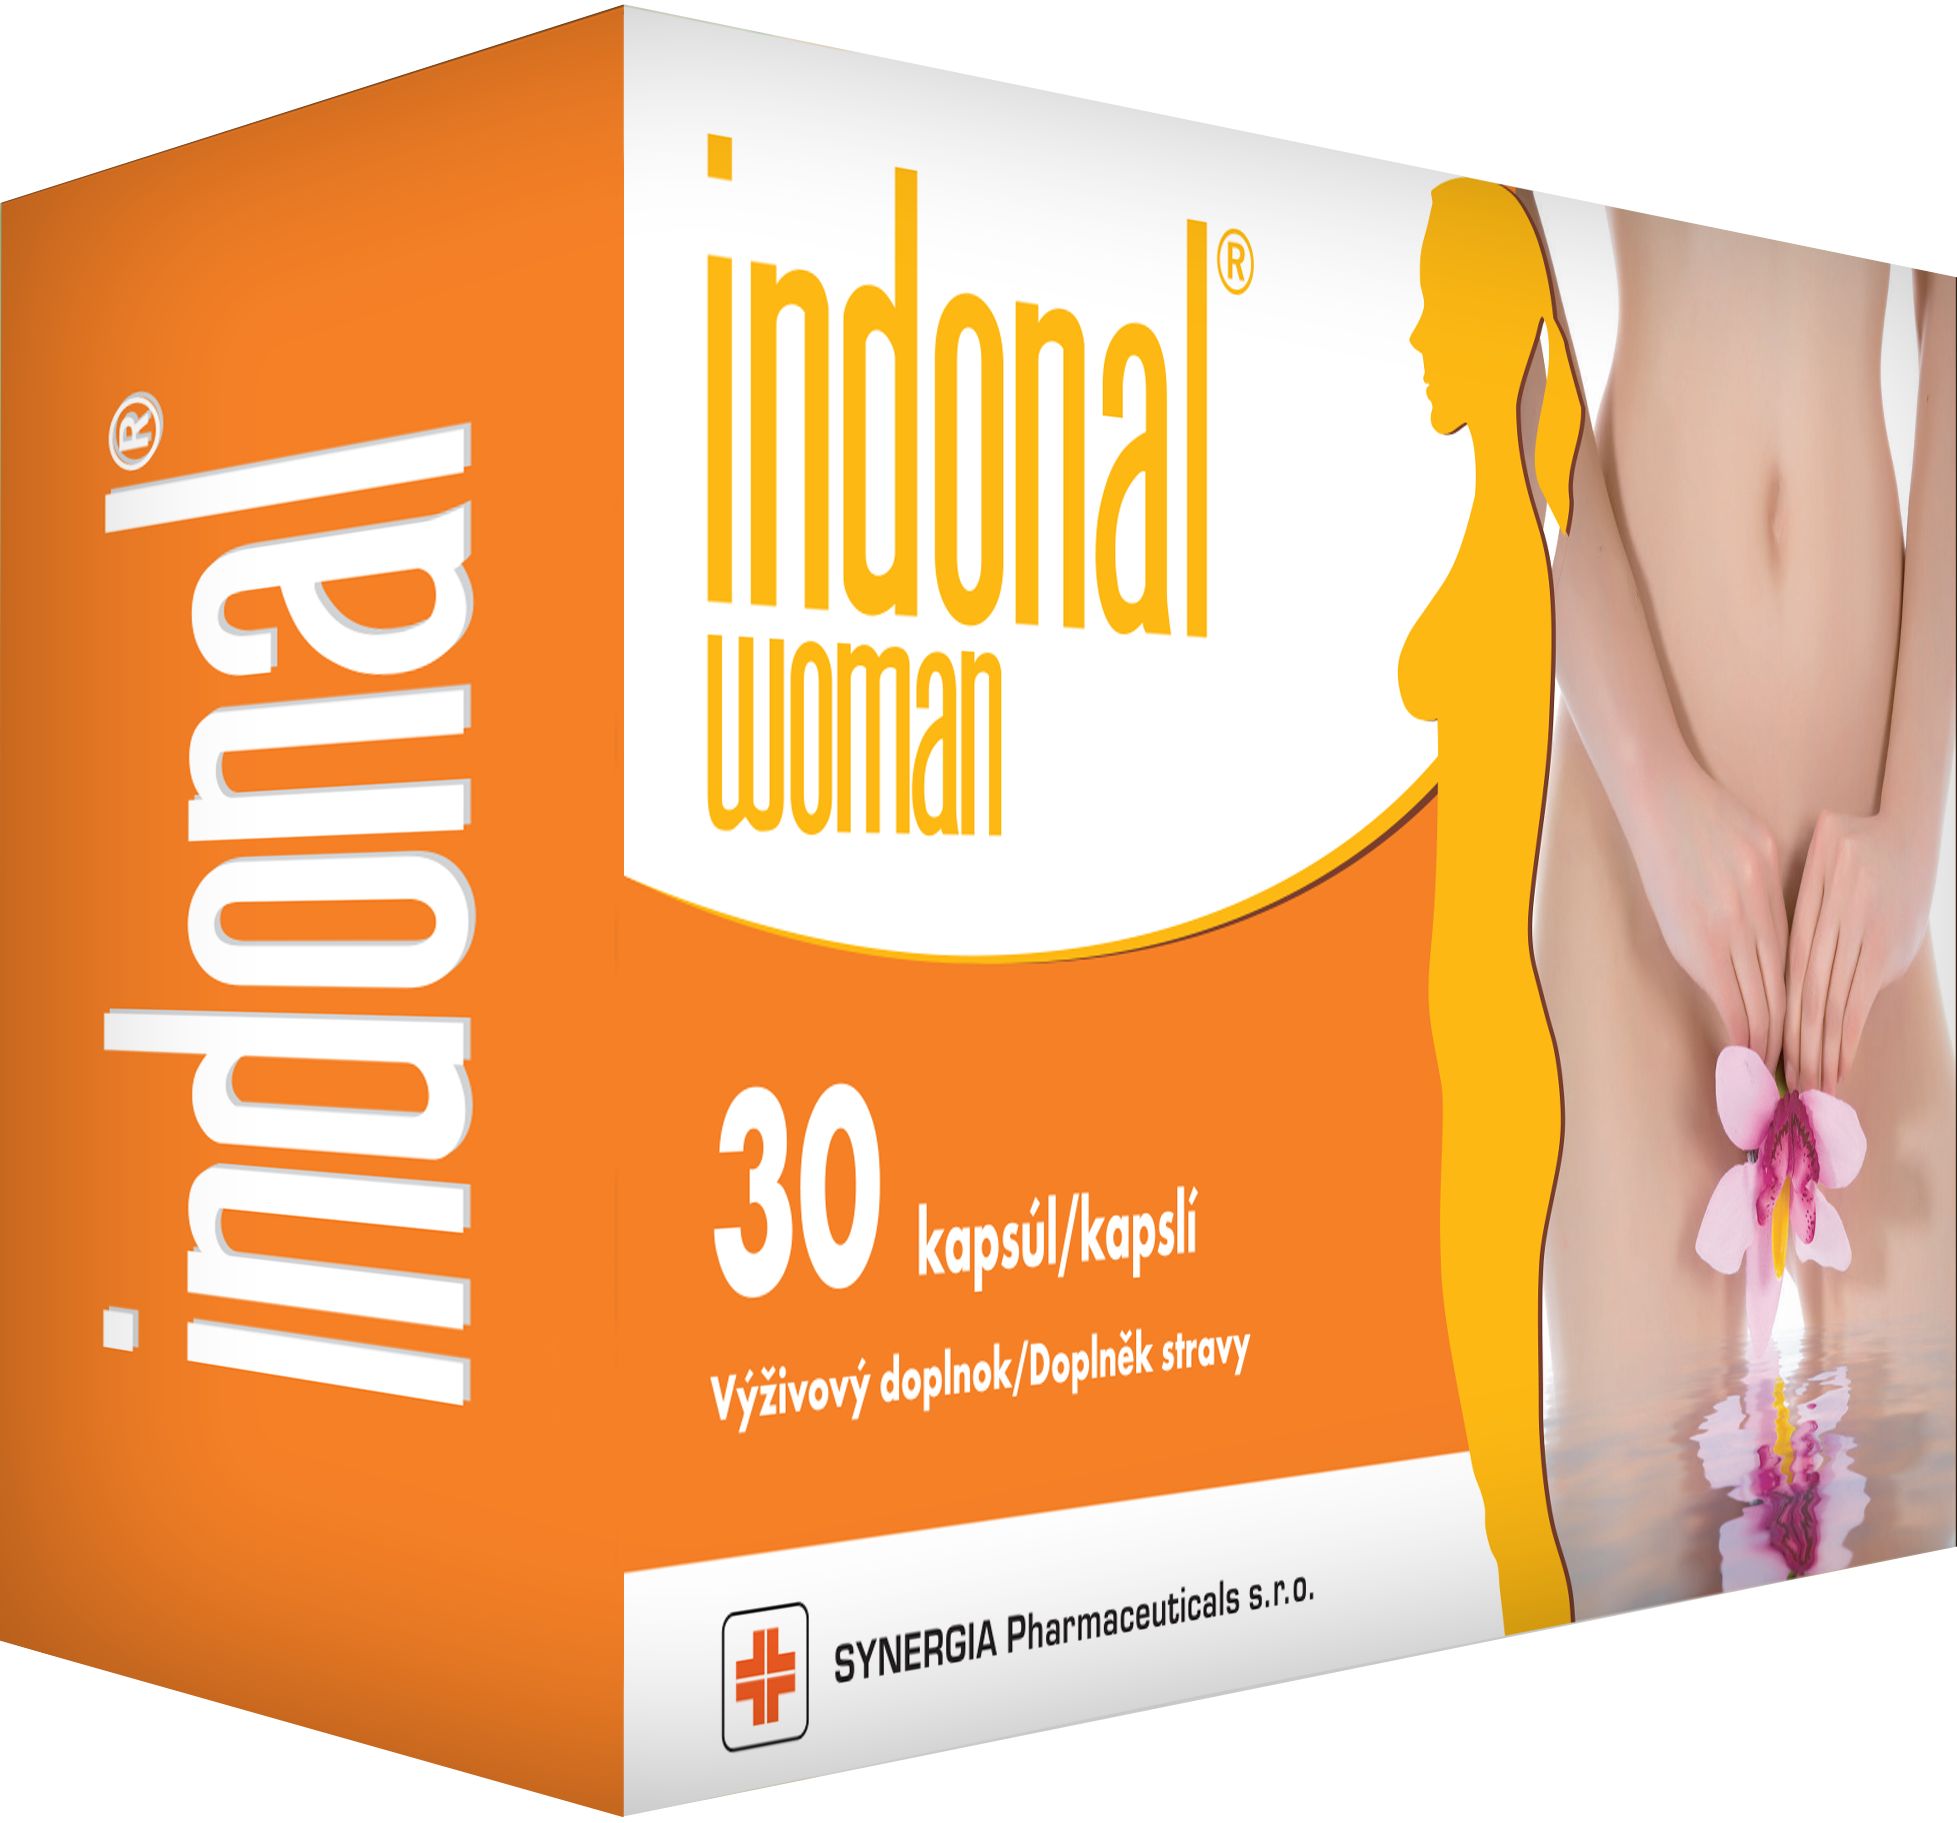 Indonal Woman 30 kapslí Indonal